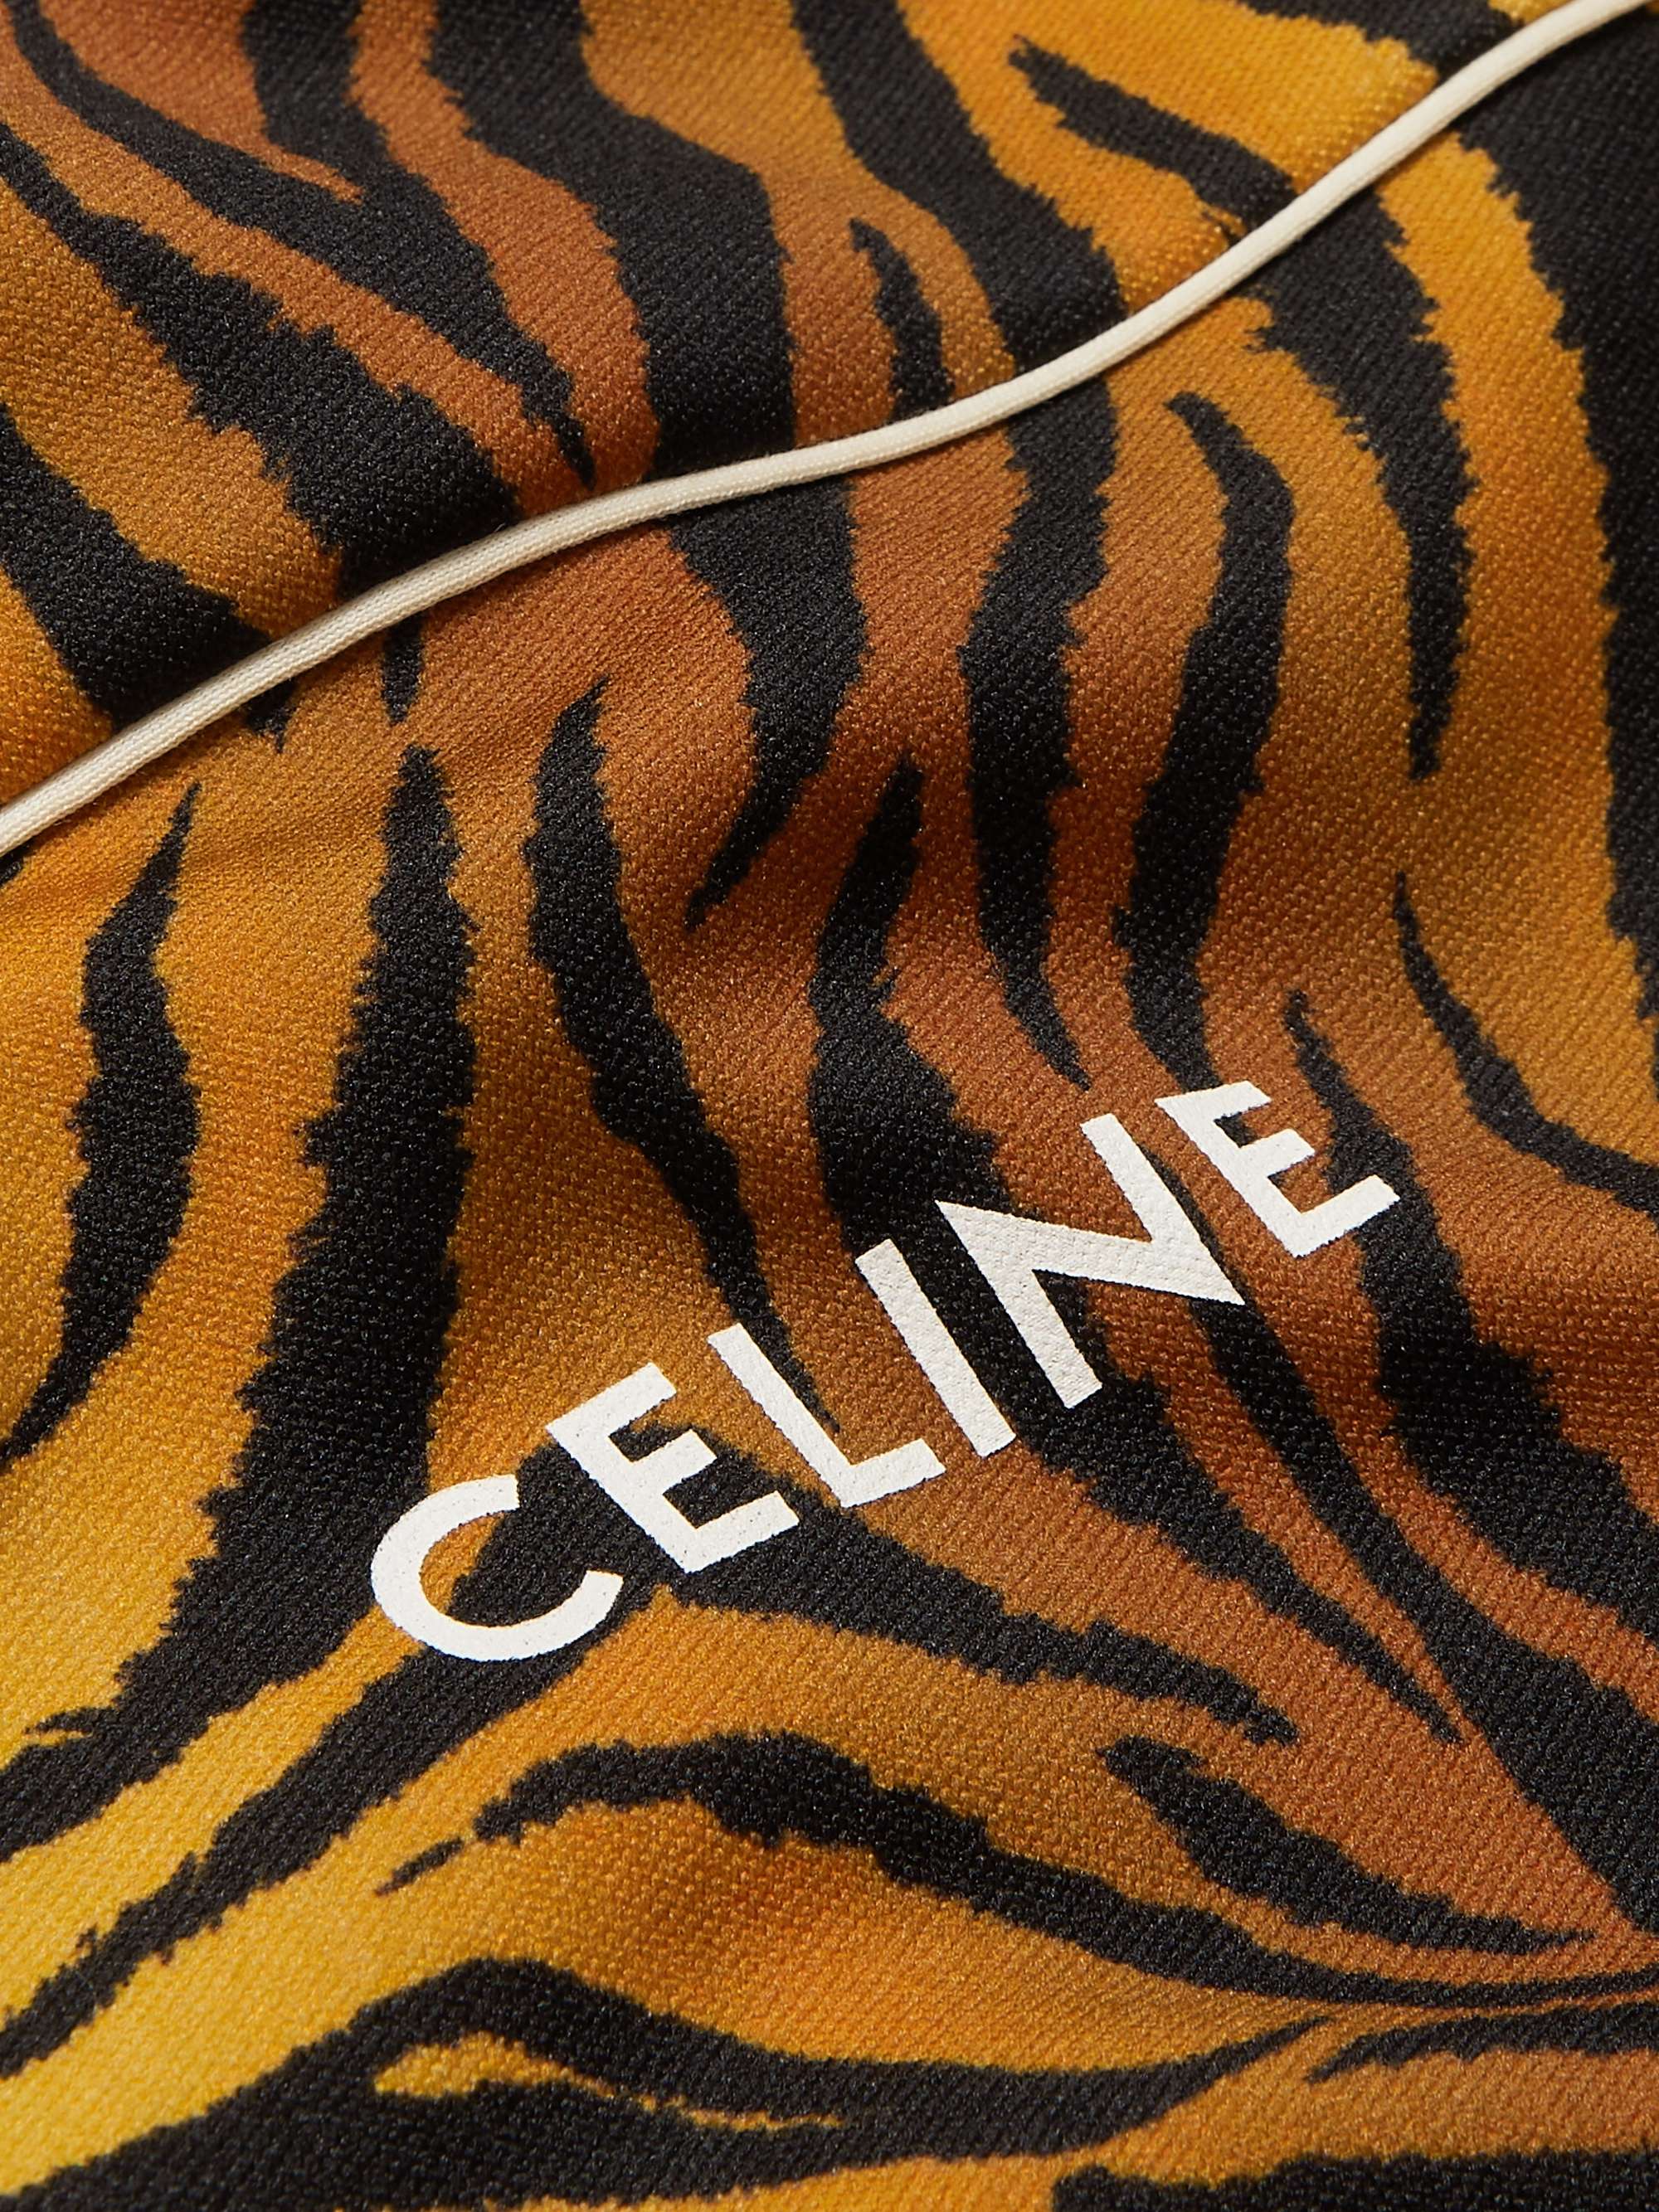 CELINE HOMME Tiger-Print Jersey Track Jacket